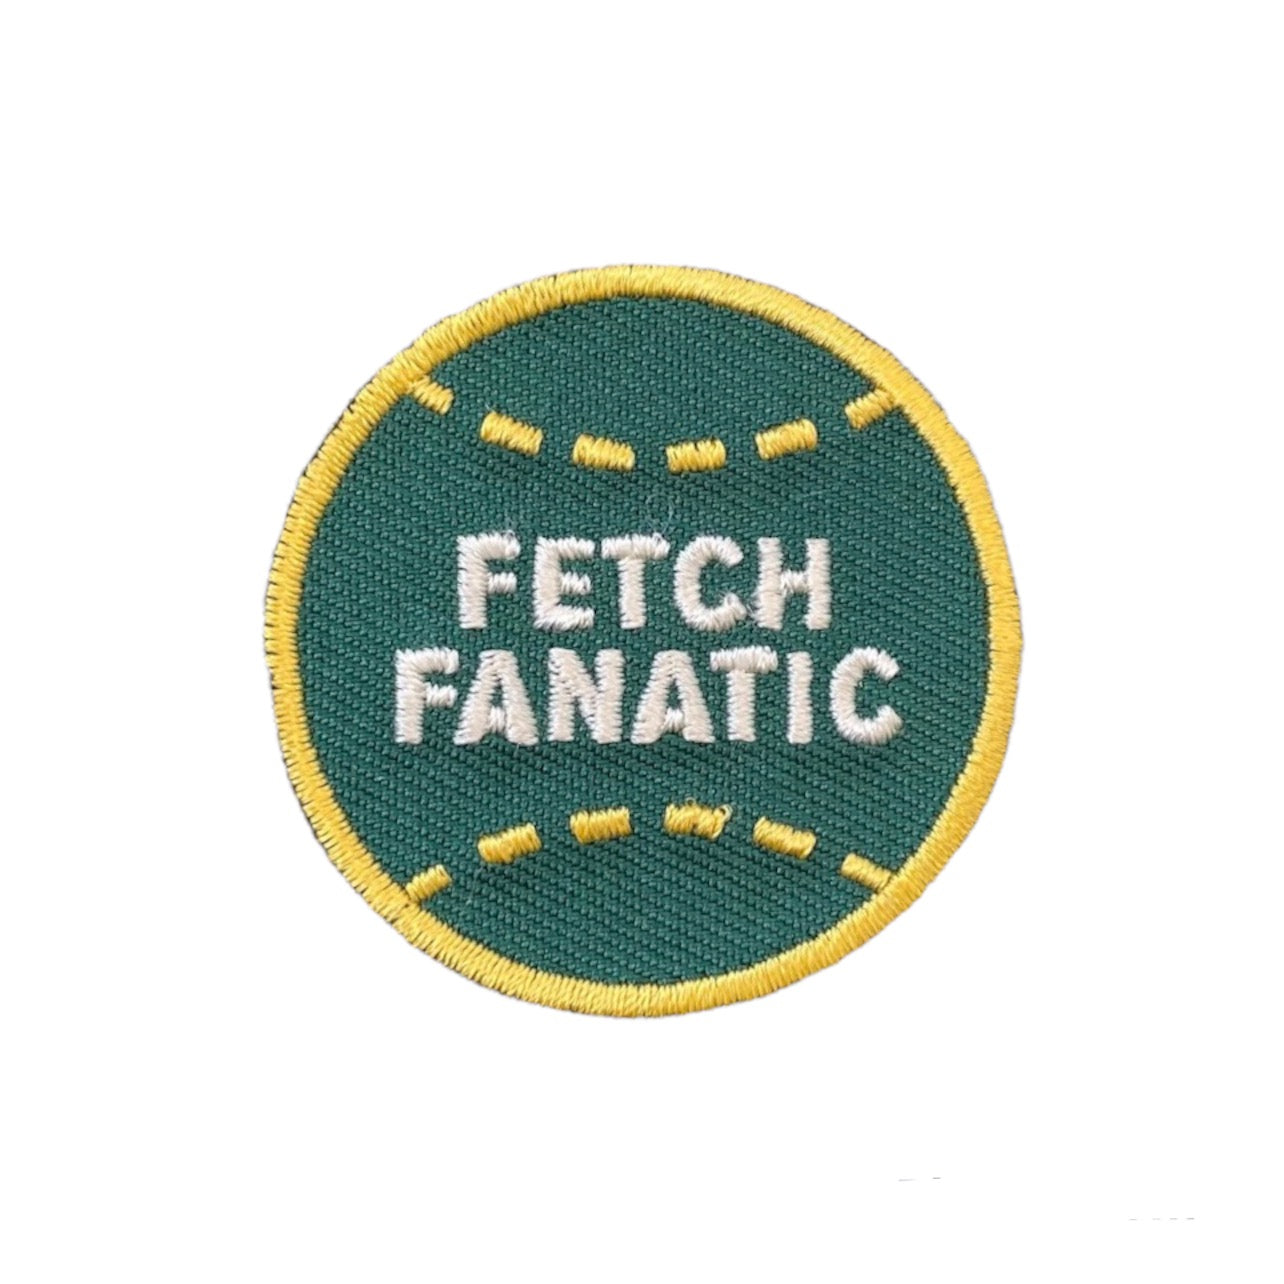 Fetch Fanatic Badge